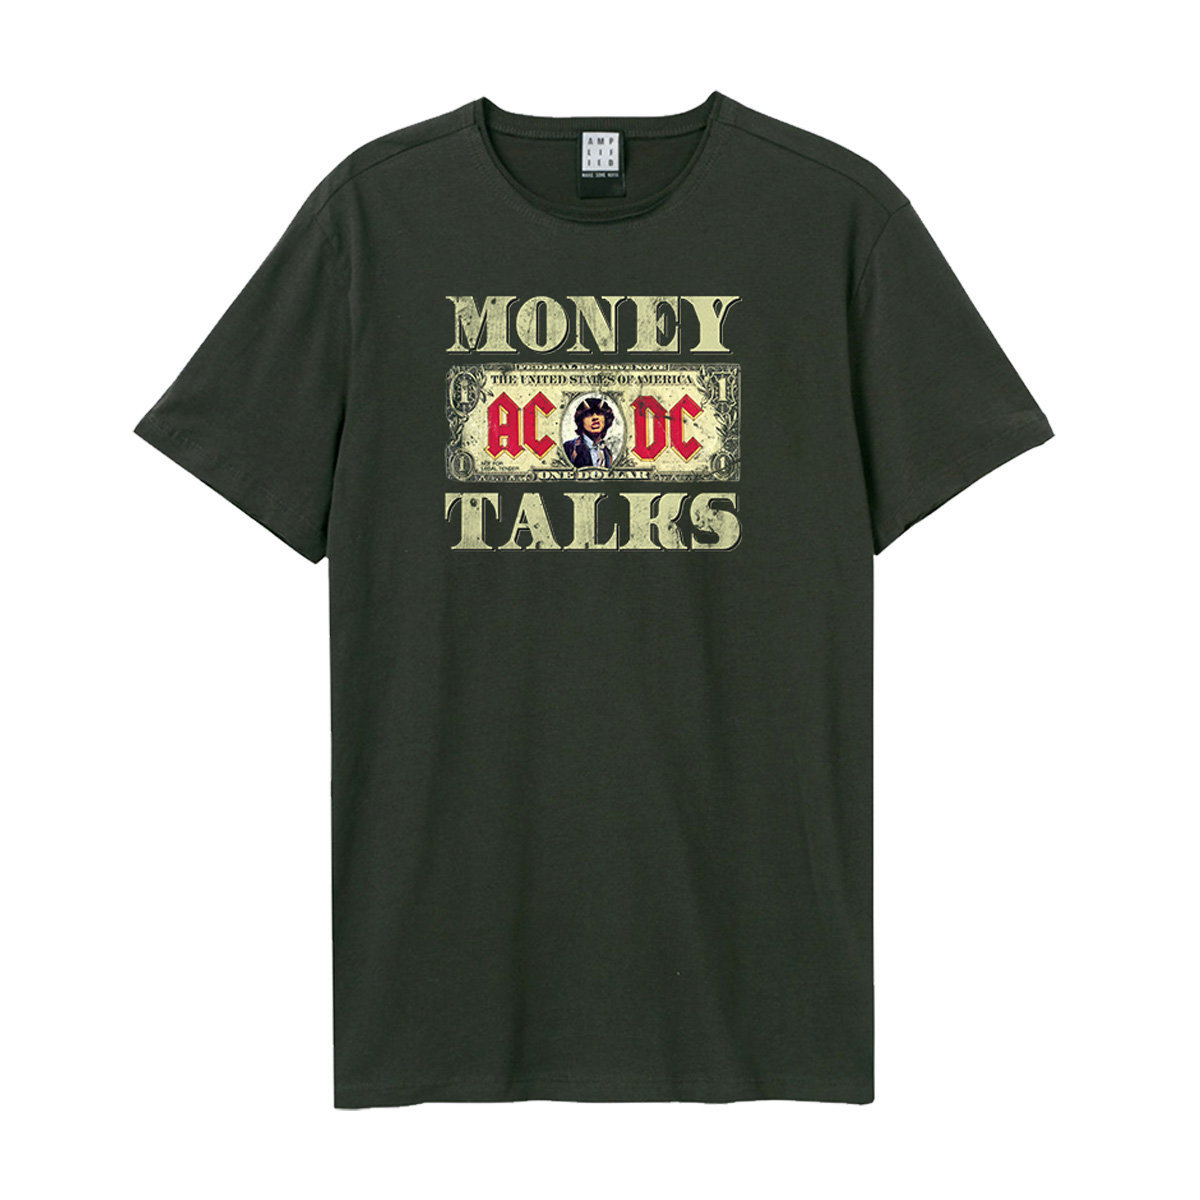 AC/DC - Money Talks